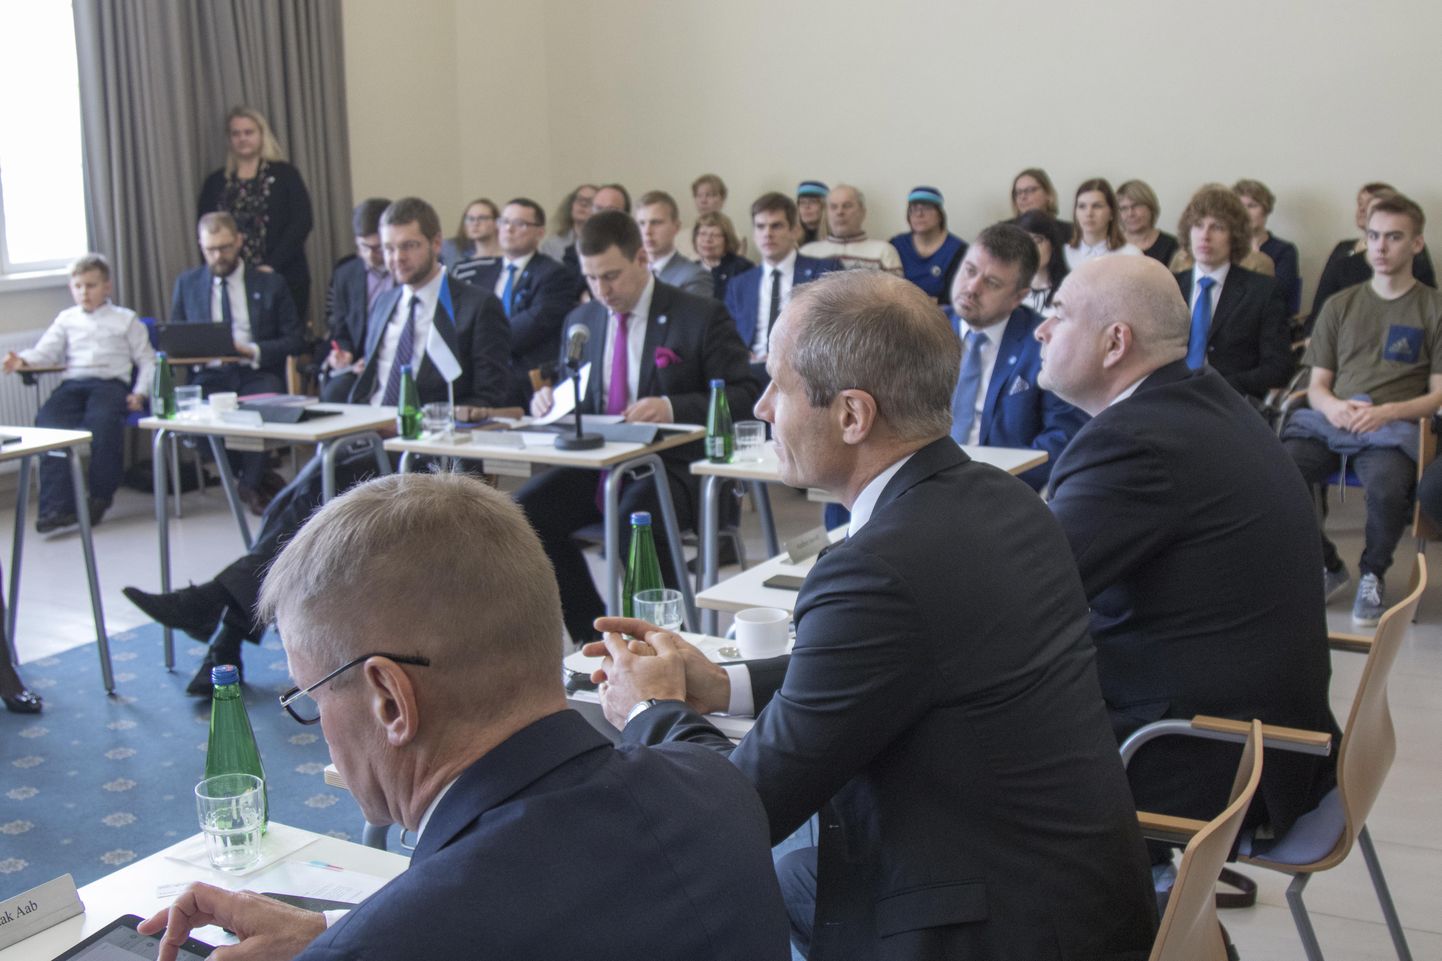 Kõik Eesti Vabariigi ministrid kogunesid eile Viljandi gümnaasiumi aulasse, et pidada valitsuse korralist istungit.